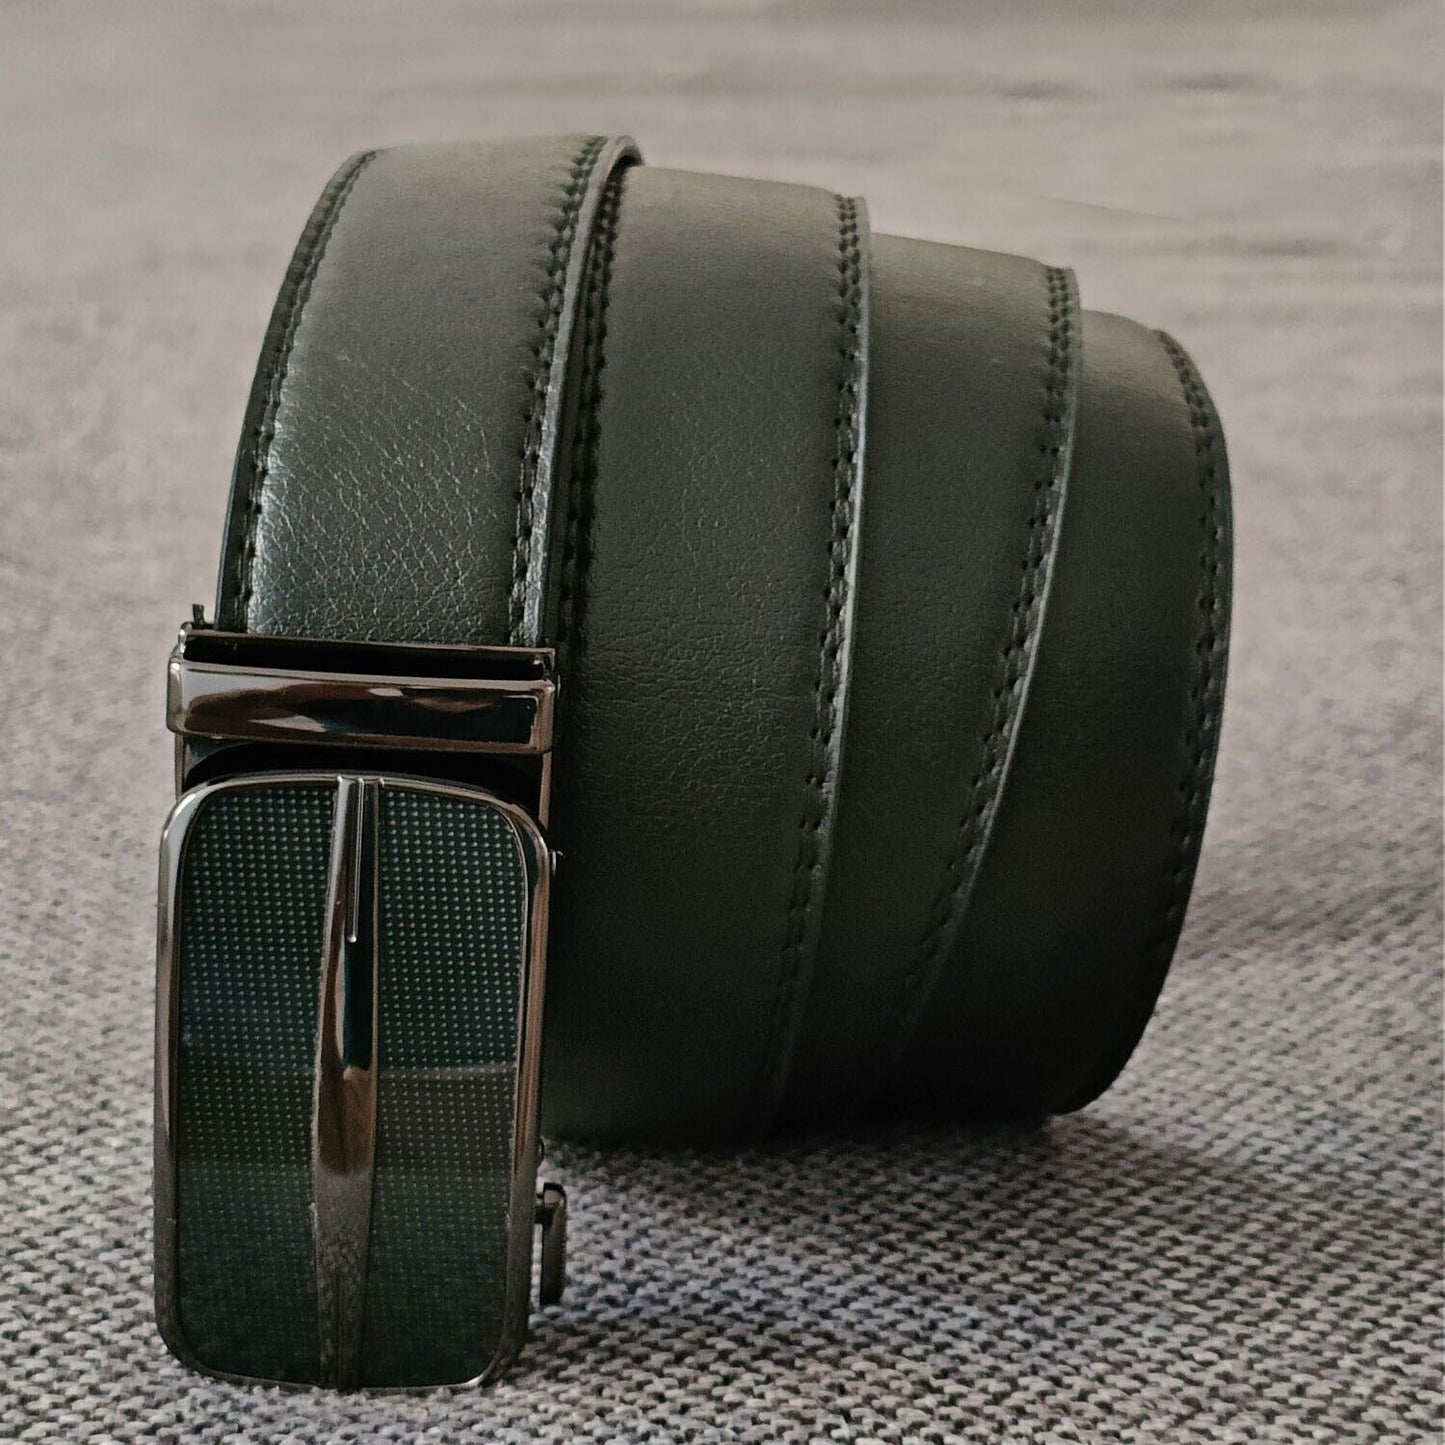 Microfiber Leather Mens Ratchet Belt Belts For Men Adjustable Size, Slide Buckle